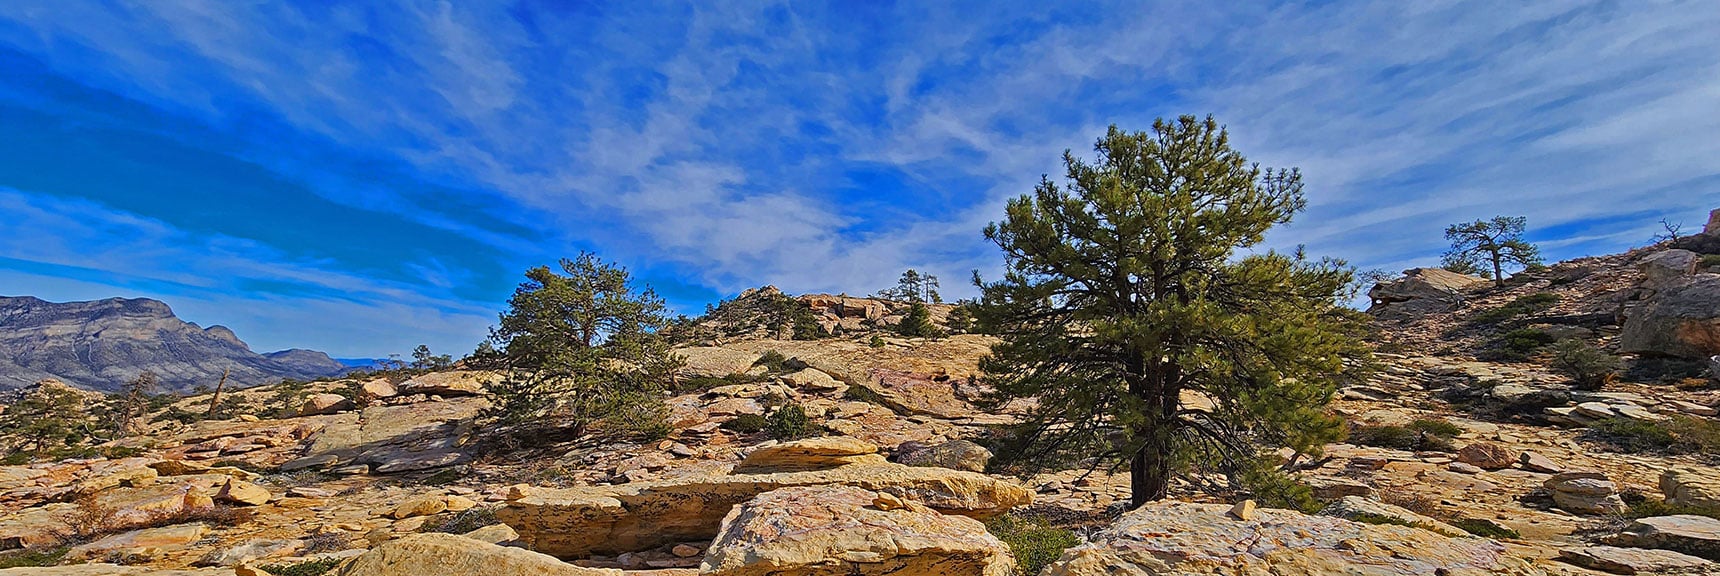 Northern View on the Upper Plateau | North Upper Crest Ridgeline | Rainbow Mountain Wilderness, Nevada